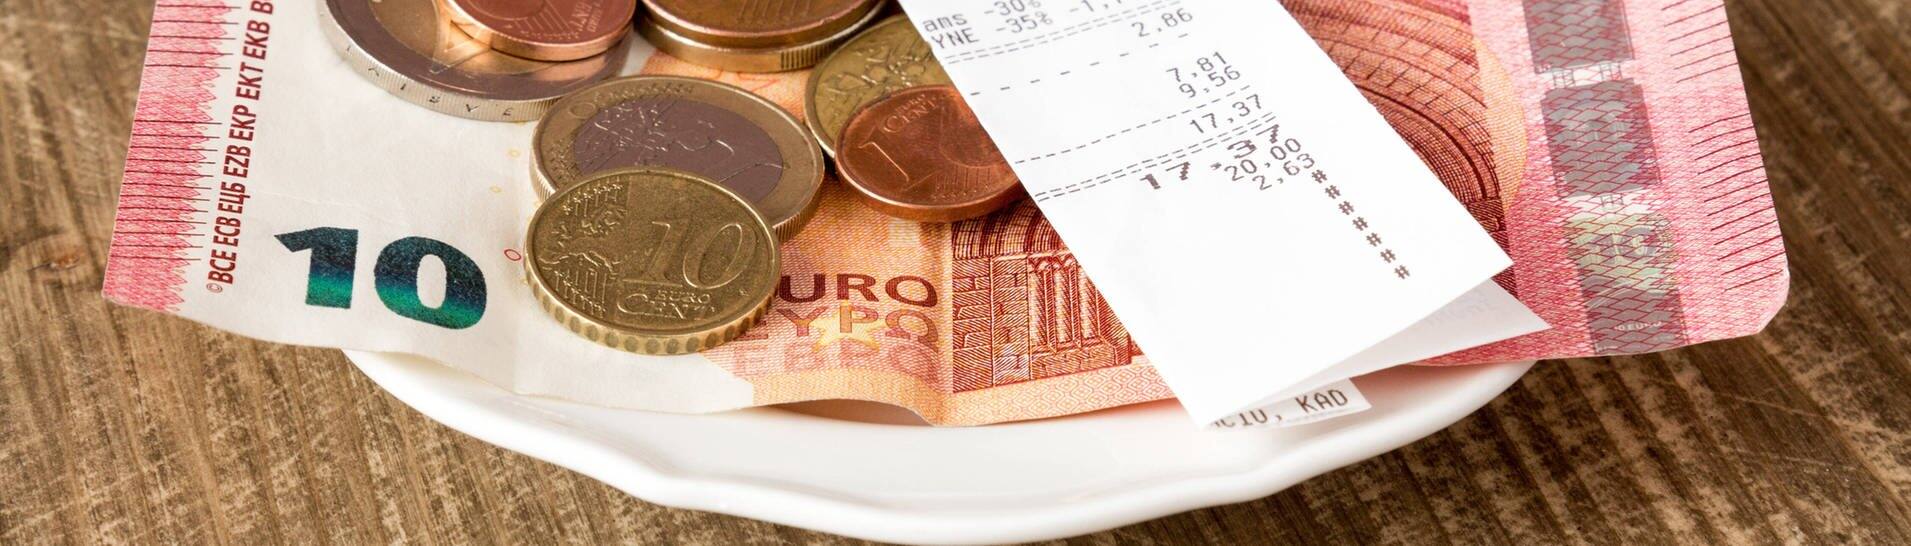 Geld liegt in einem Restaurant auf einem Teller. (Foto: IMAGO, IMAGO / Zoonar)